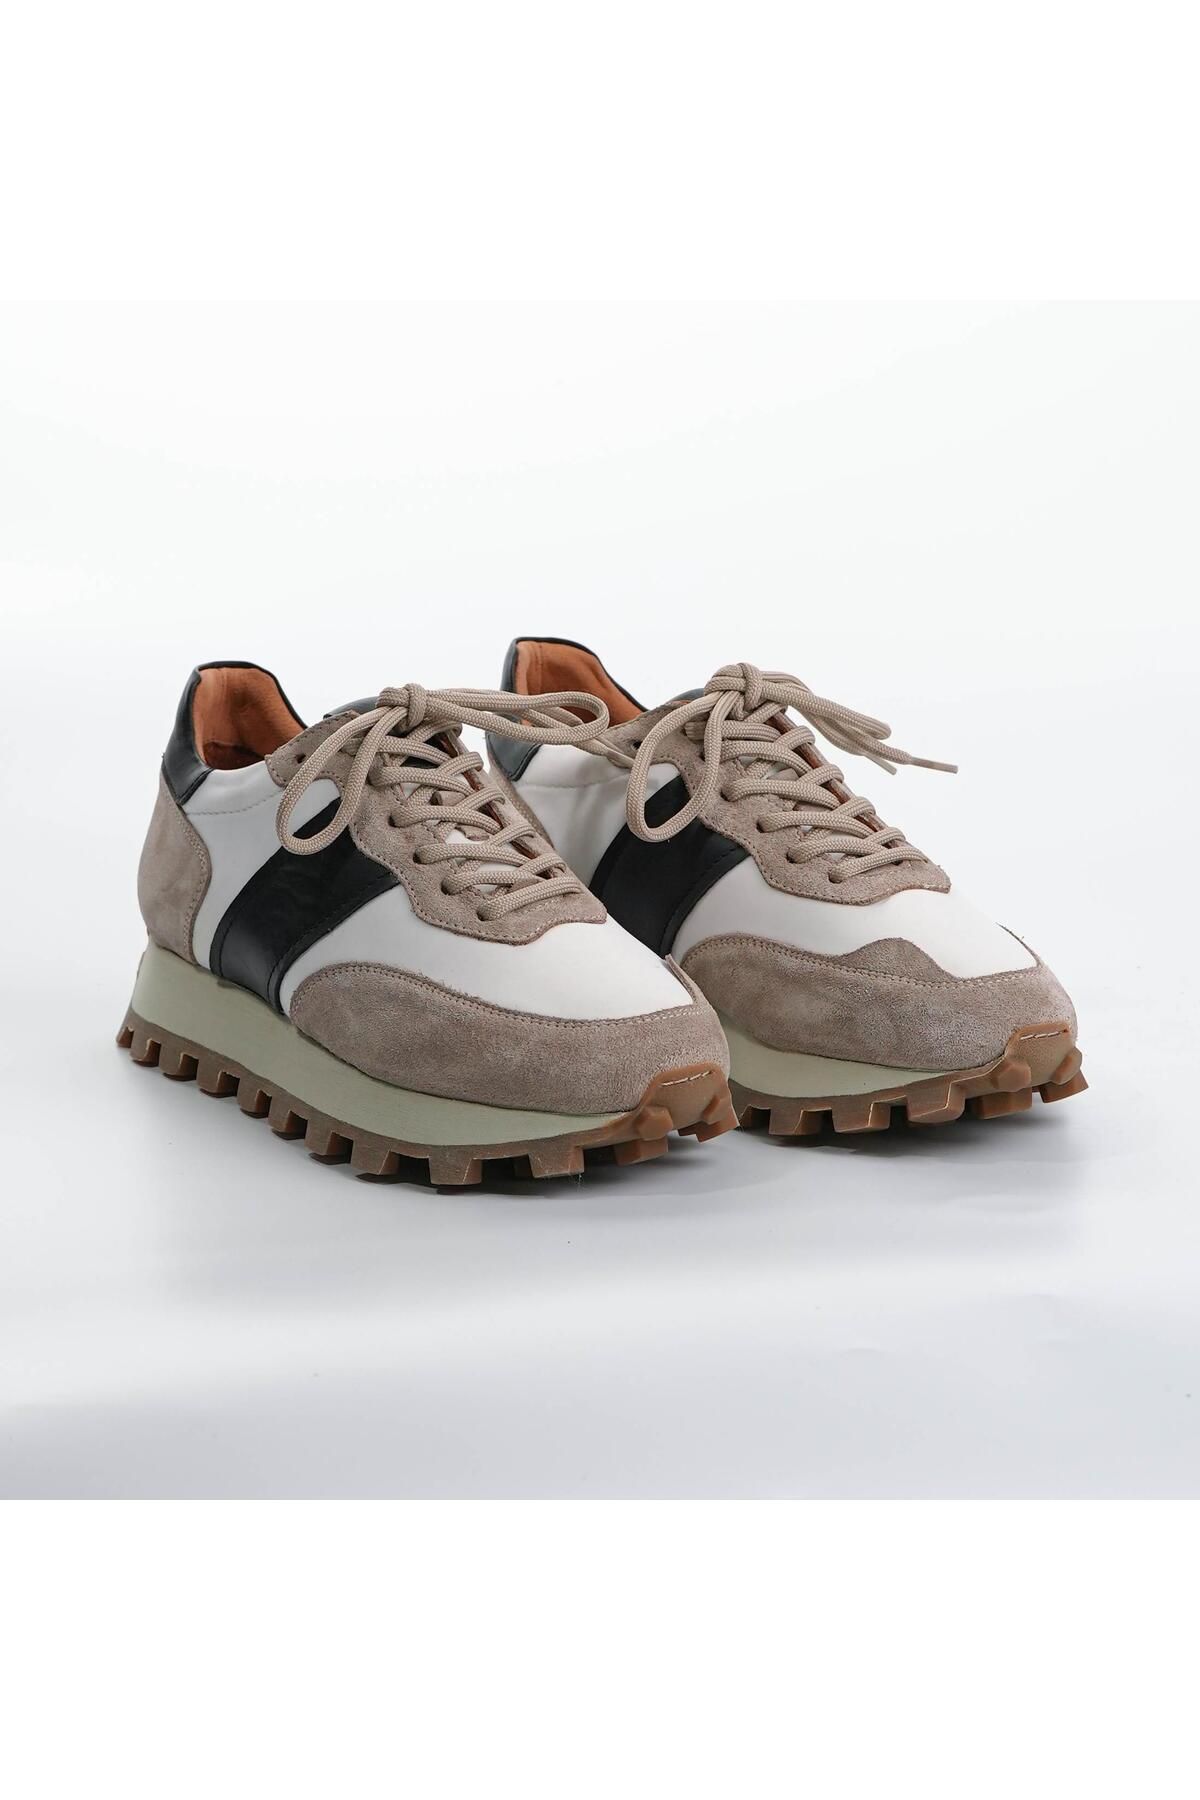 Tetri Sarasota Model Gerçek Deri El Yapımı Erkek Bej Sneaker Ayakkabı - Erkek Spor Ayakkabı